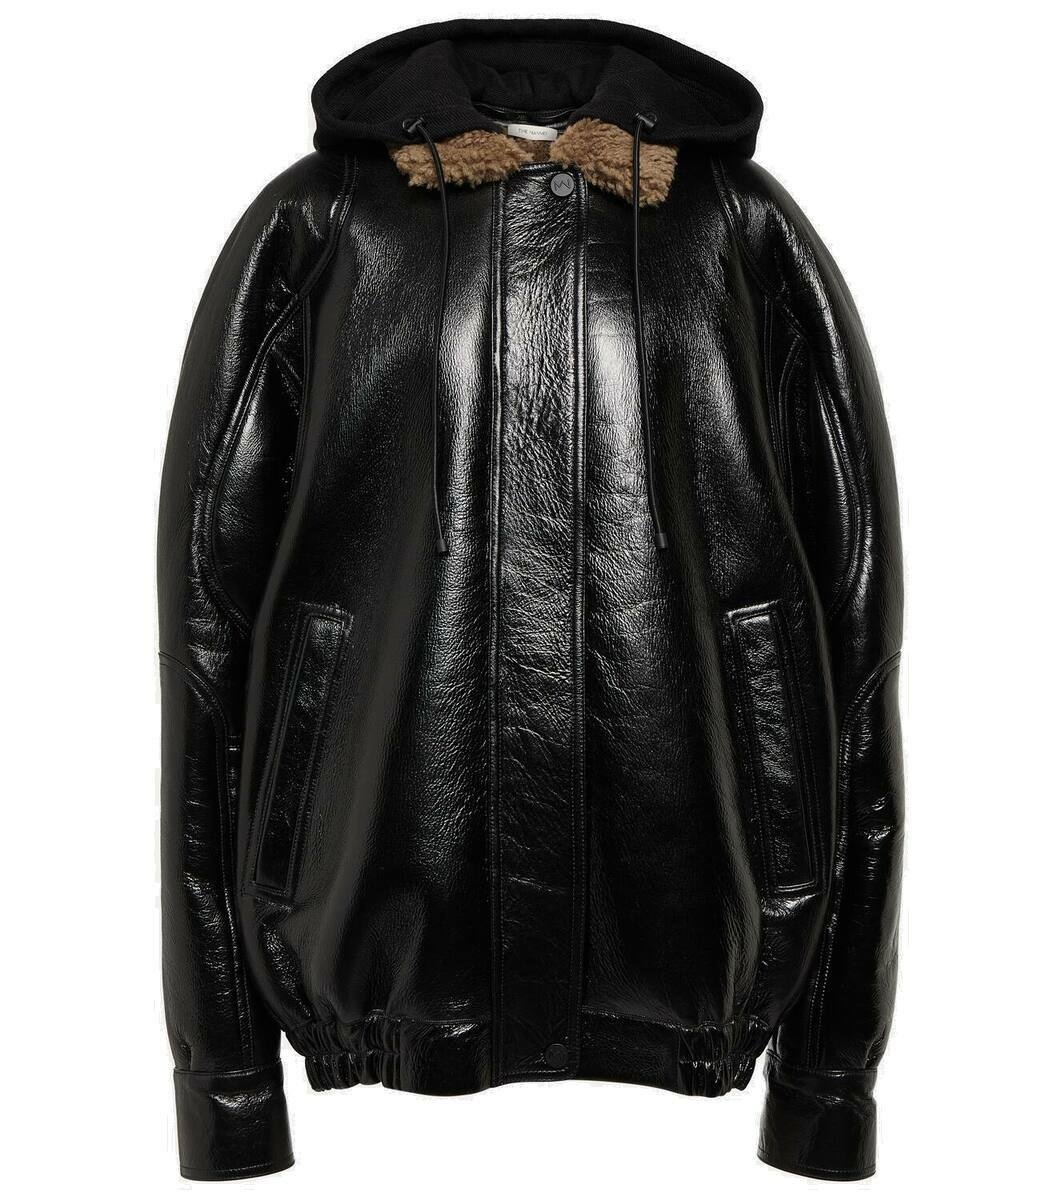 Photo: The Mannei Batumi oversized leather jacket